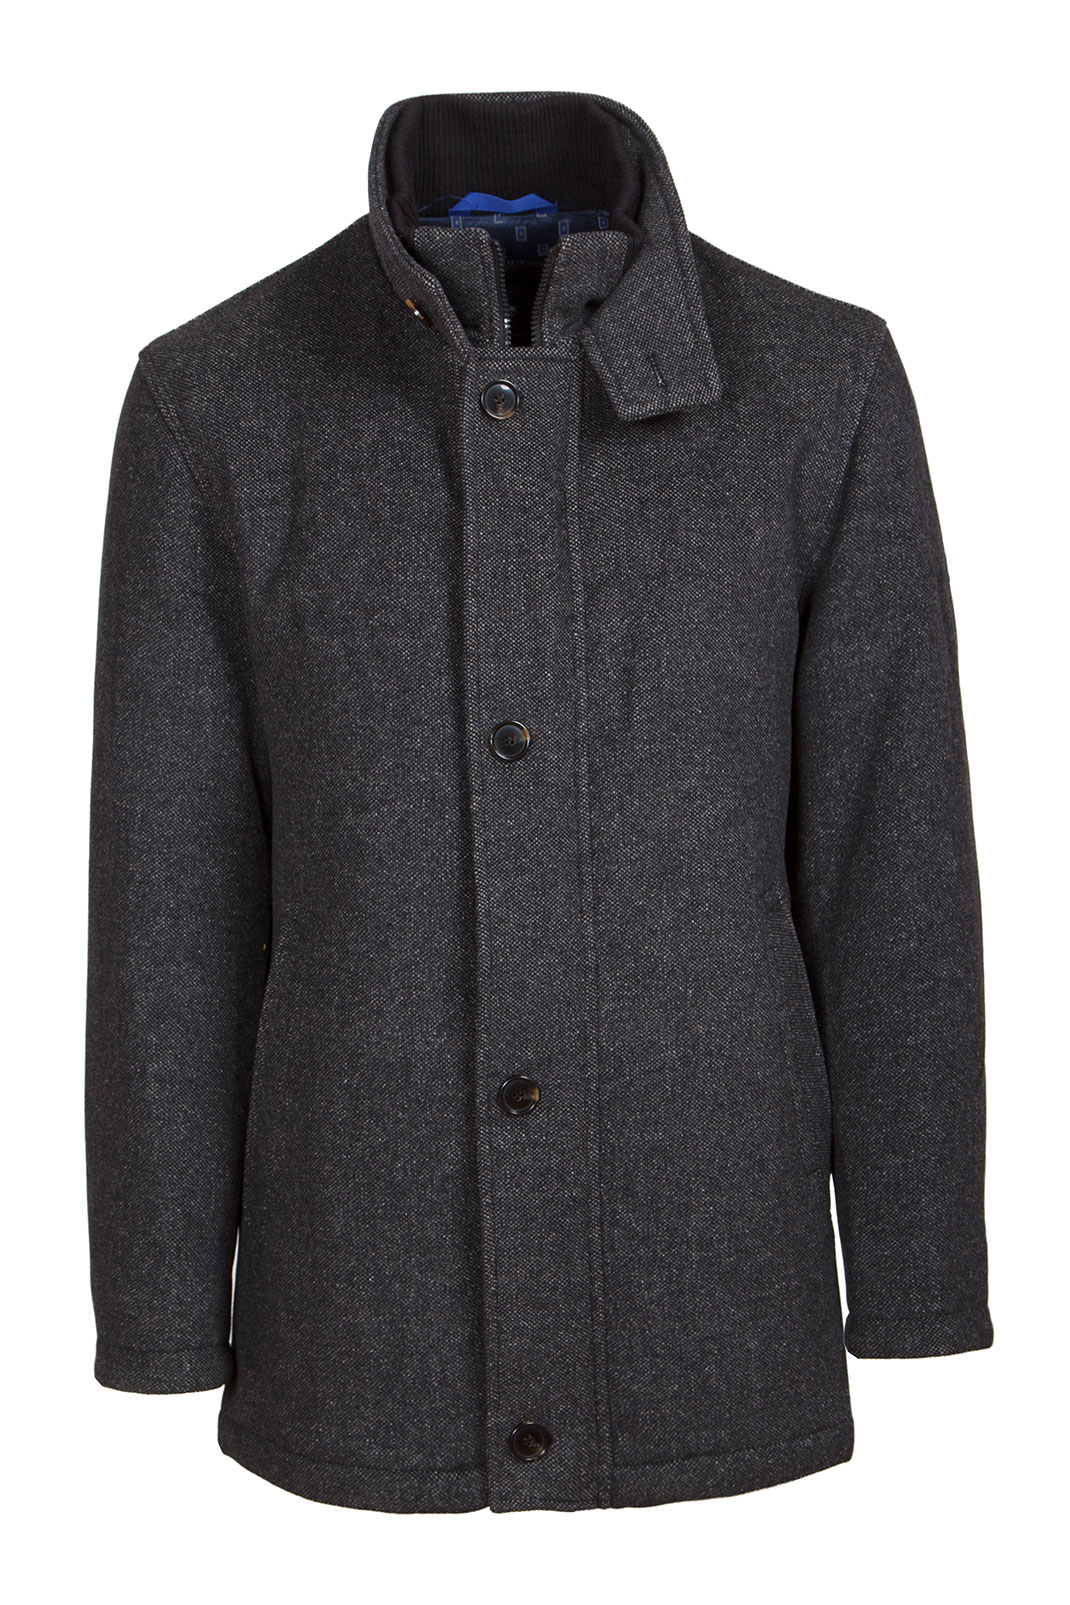 Un manteau en laine via Shutterstock